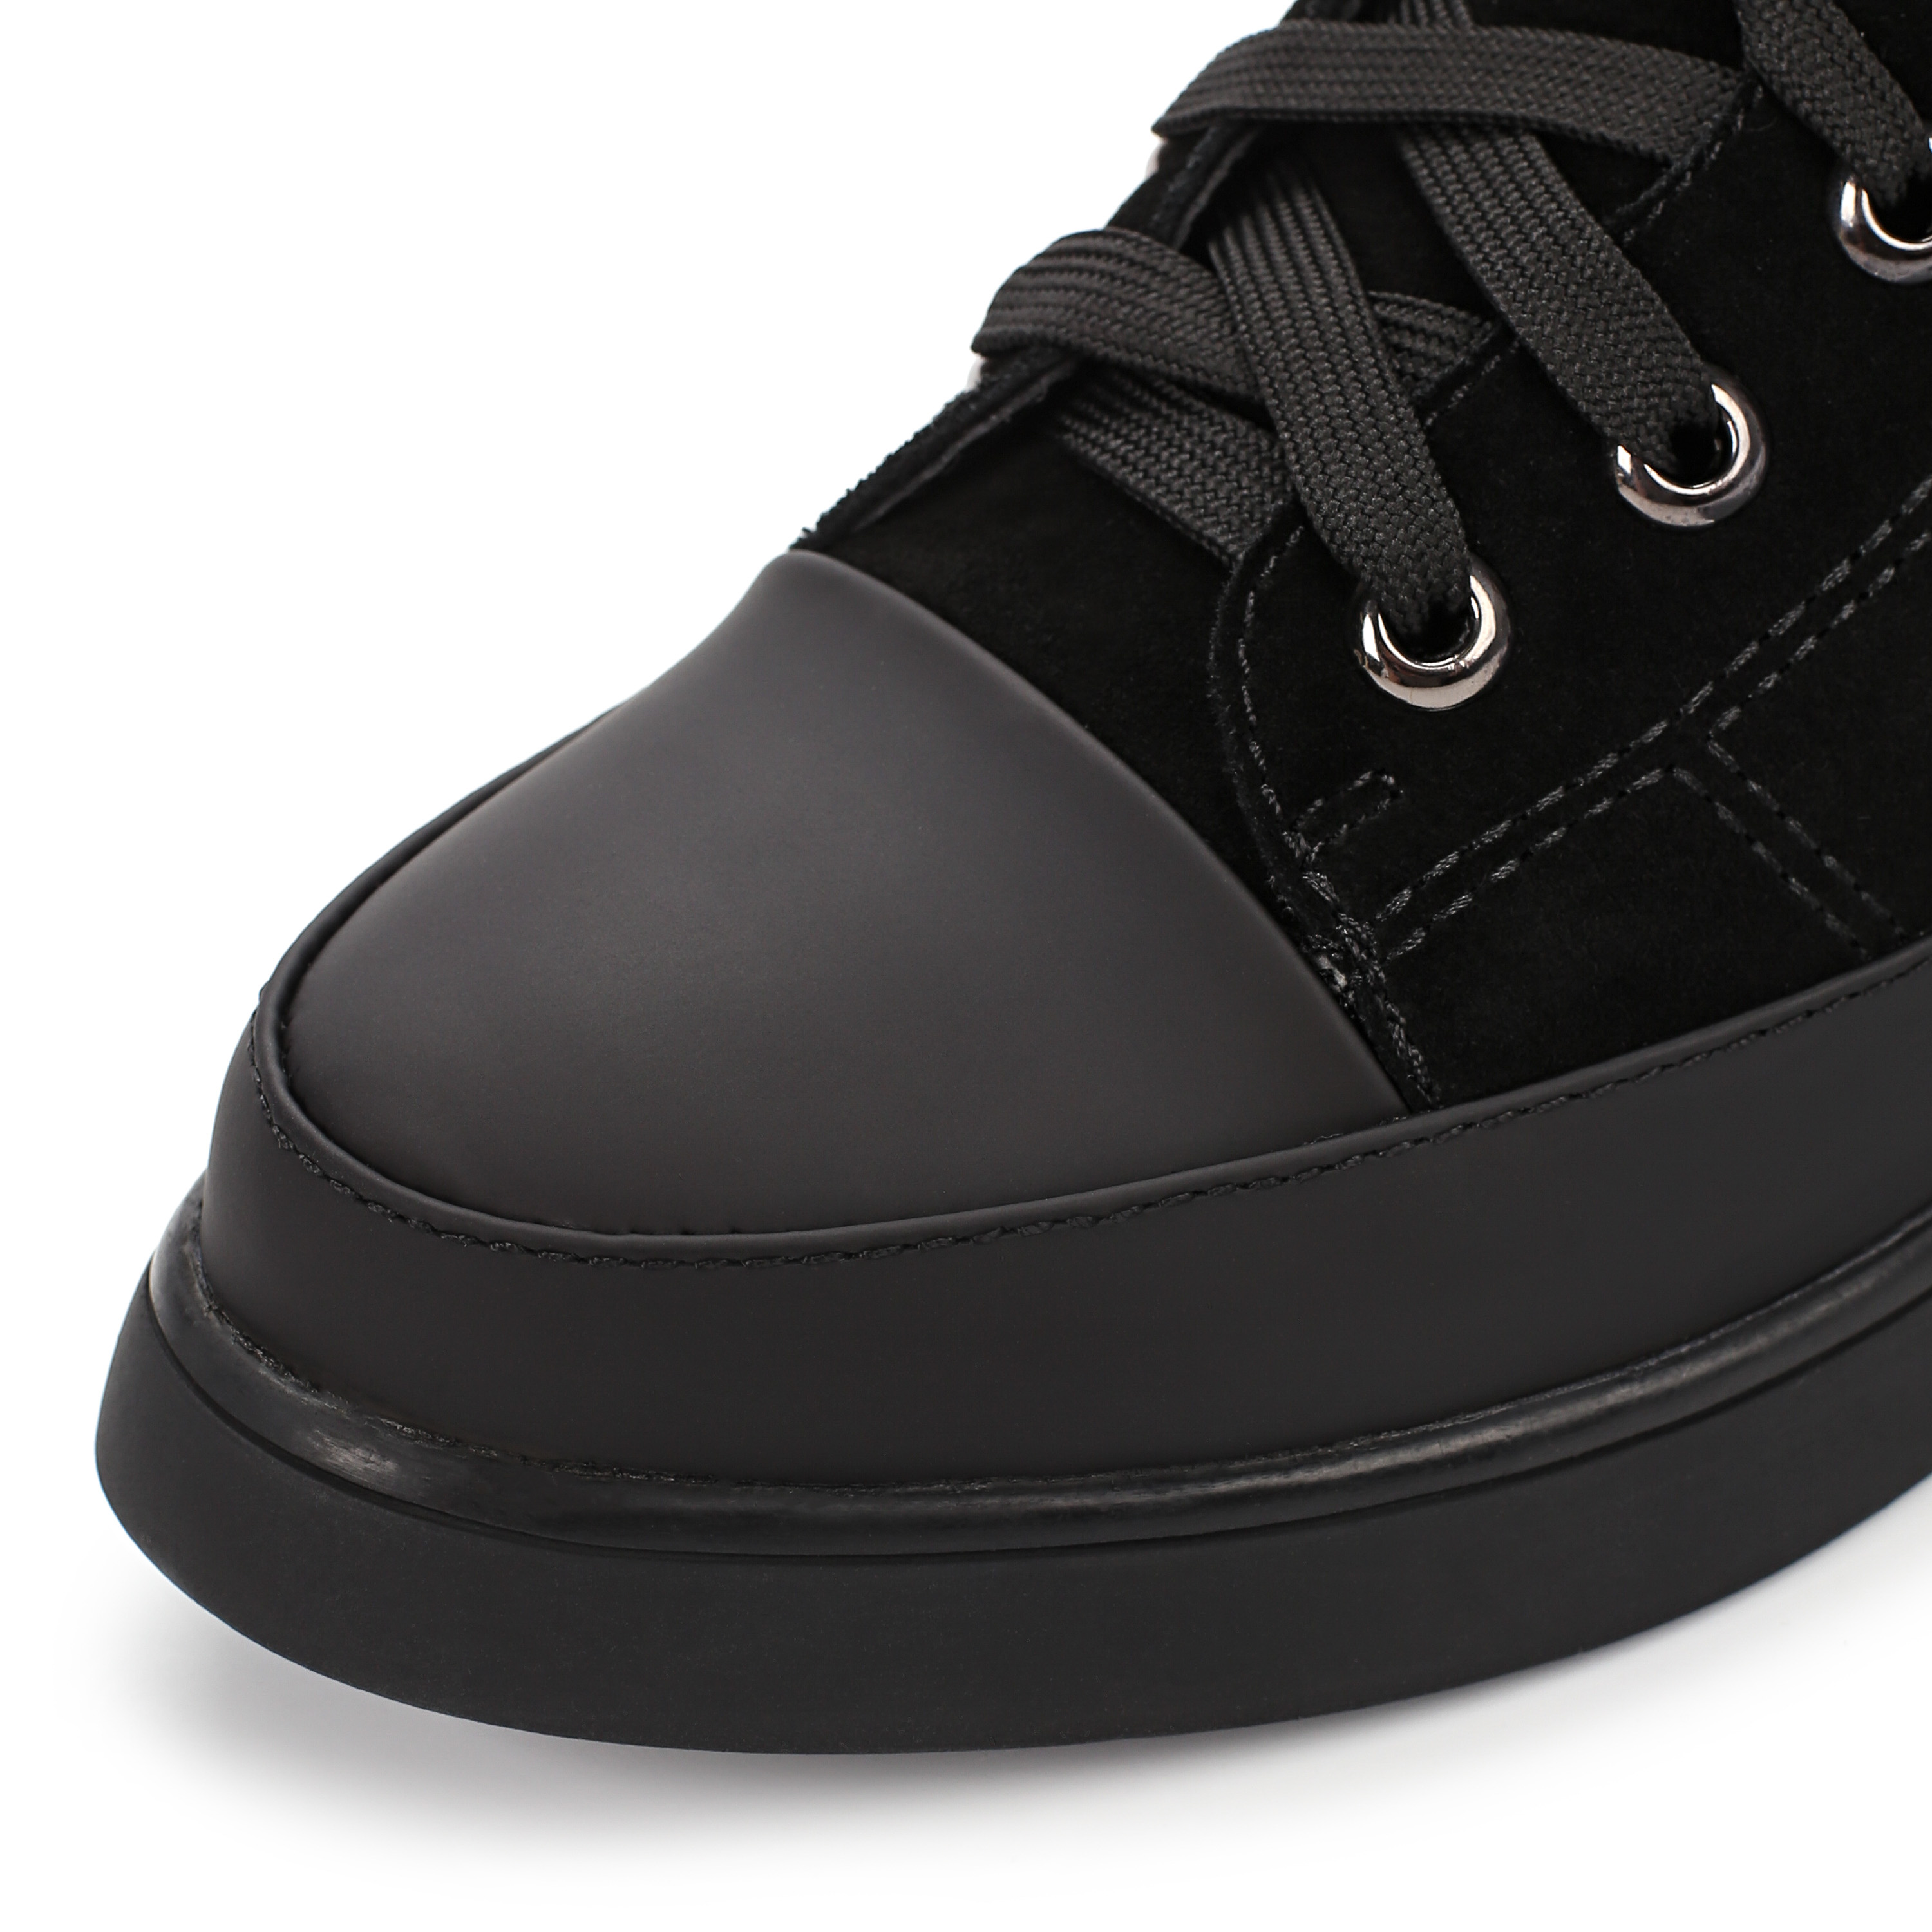 Ботинки Thomas Munz 233-584A-30202 233-584A-30202, цвет черный, размер 40 ботинки актив - фото 6